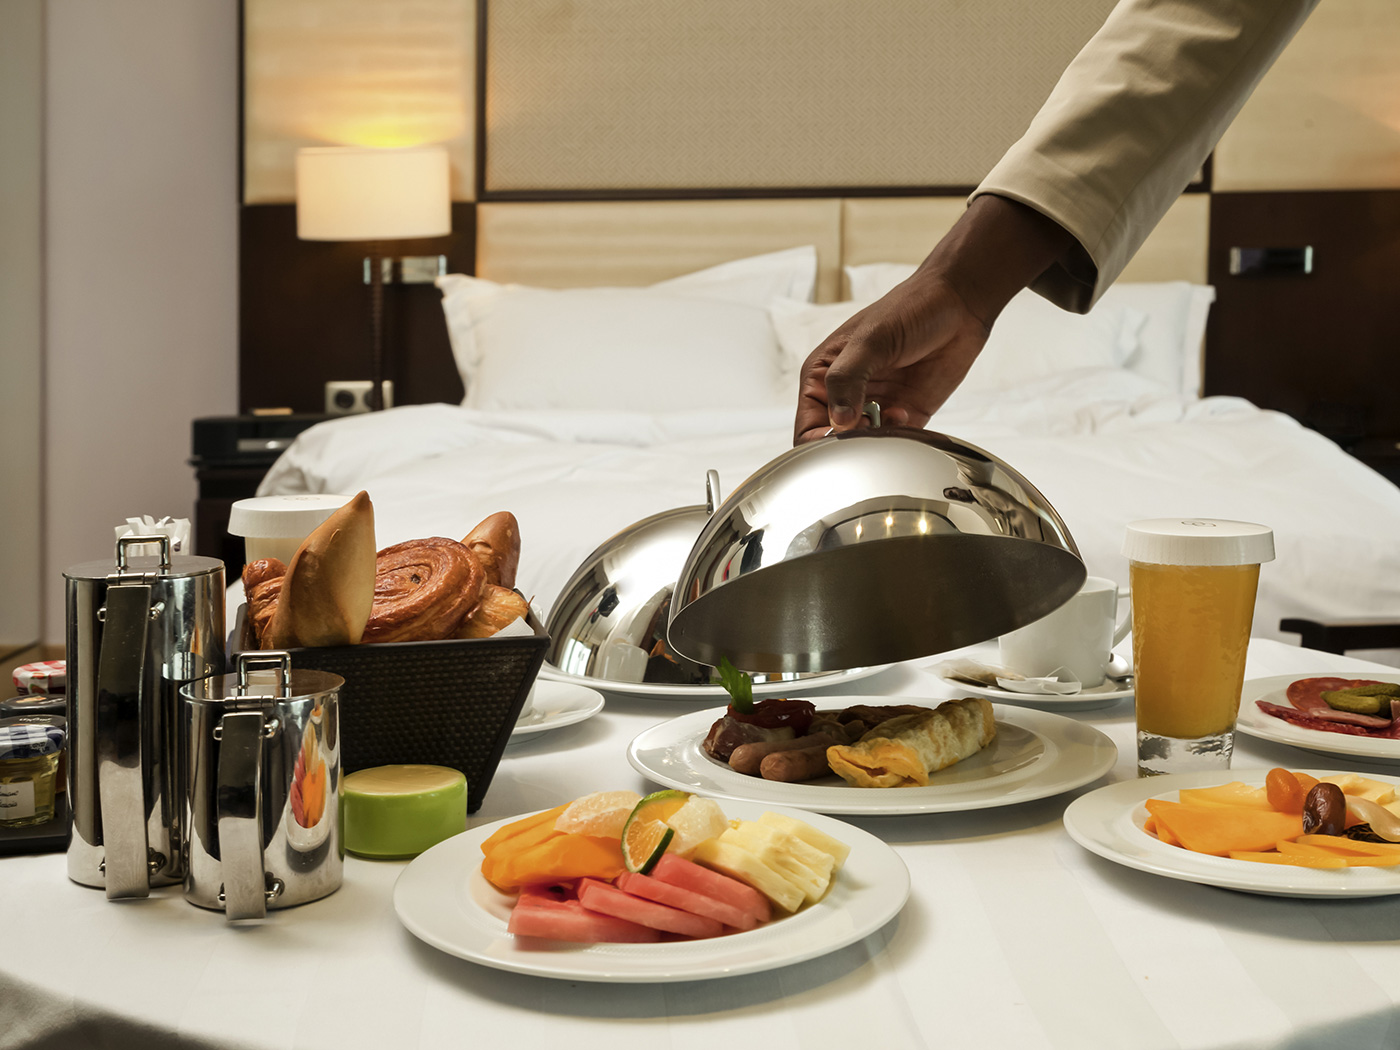 Основные услуги питания. Завтрак в номер. Рум сервис в гостинице. Завтрак в отеле рум сервис. Завтрак в гостинице.